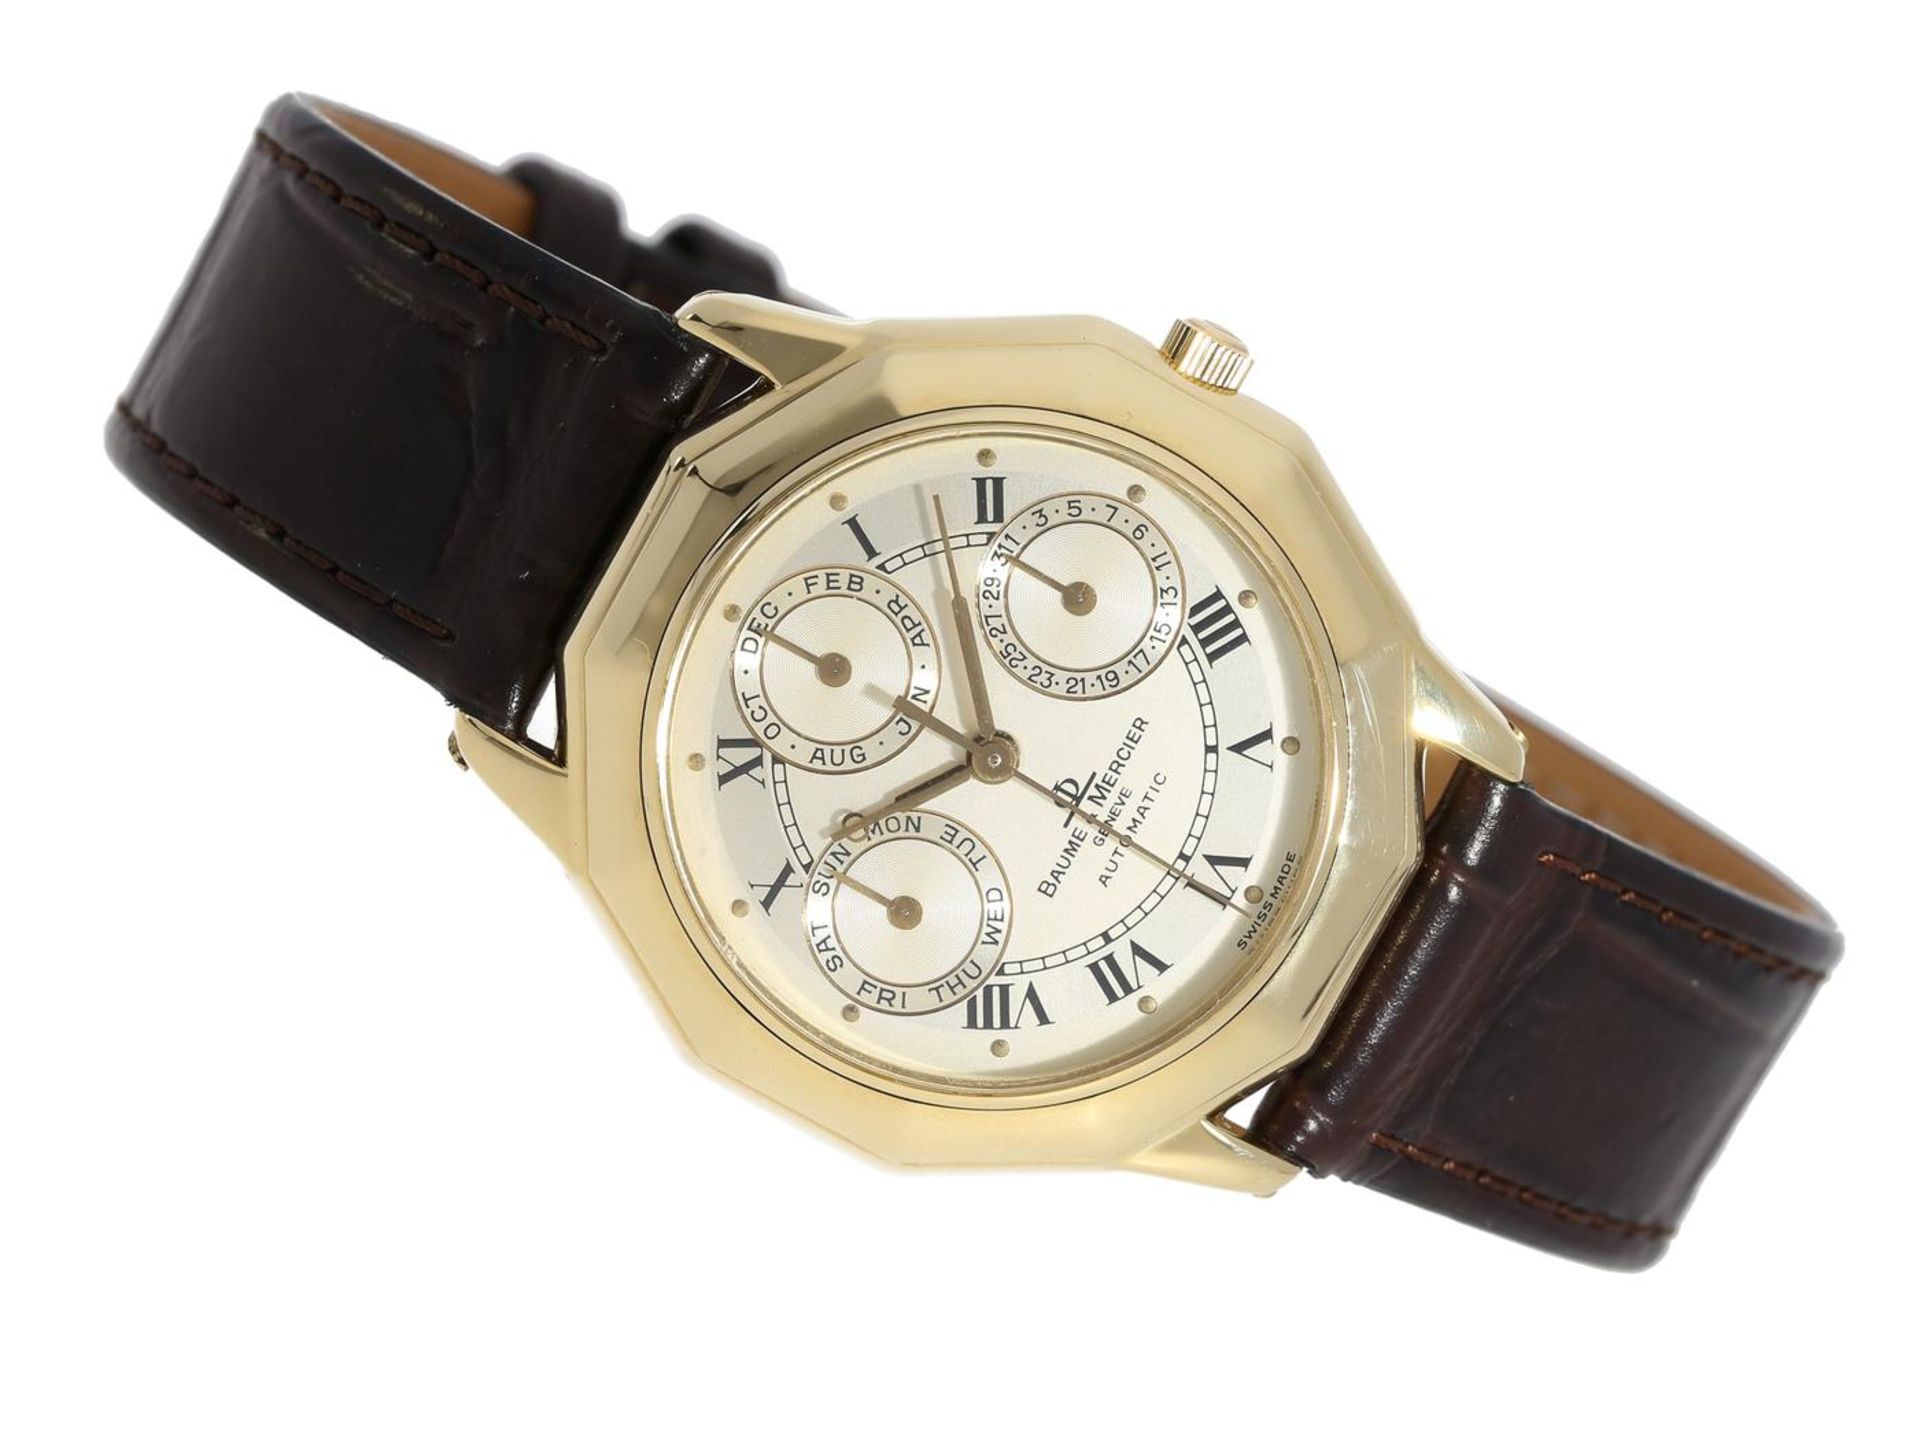 Armbanduhr: sehr luxuriöse und limitierte 18K Gold Herrenuhr mit Vollkalender, Baume & Mercier "